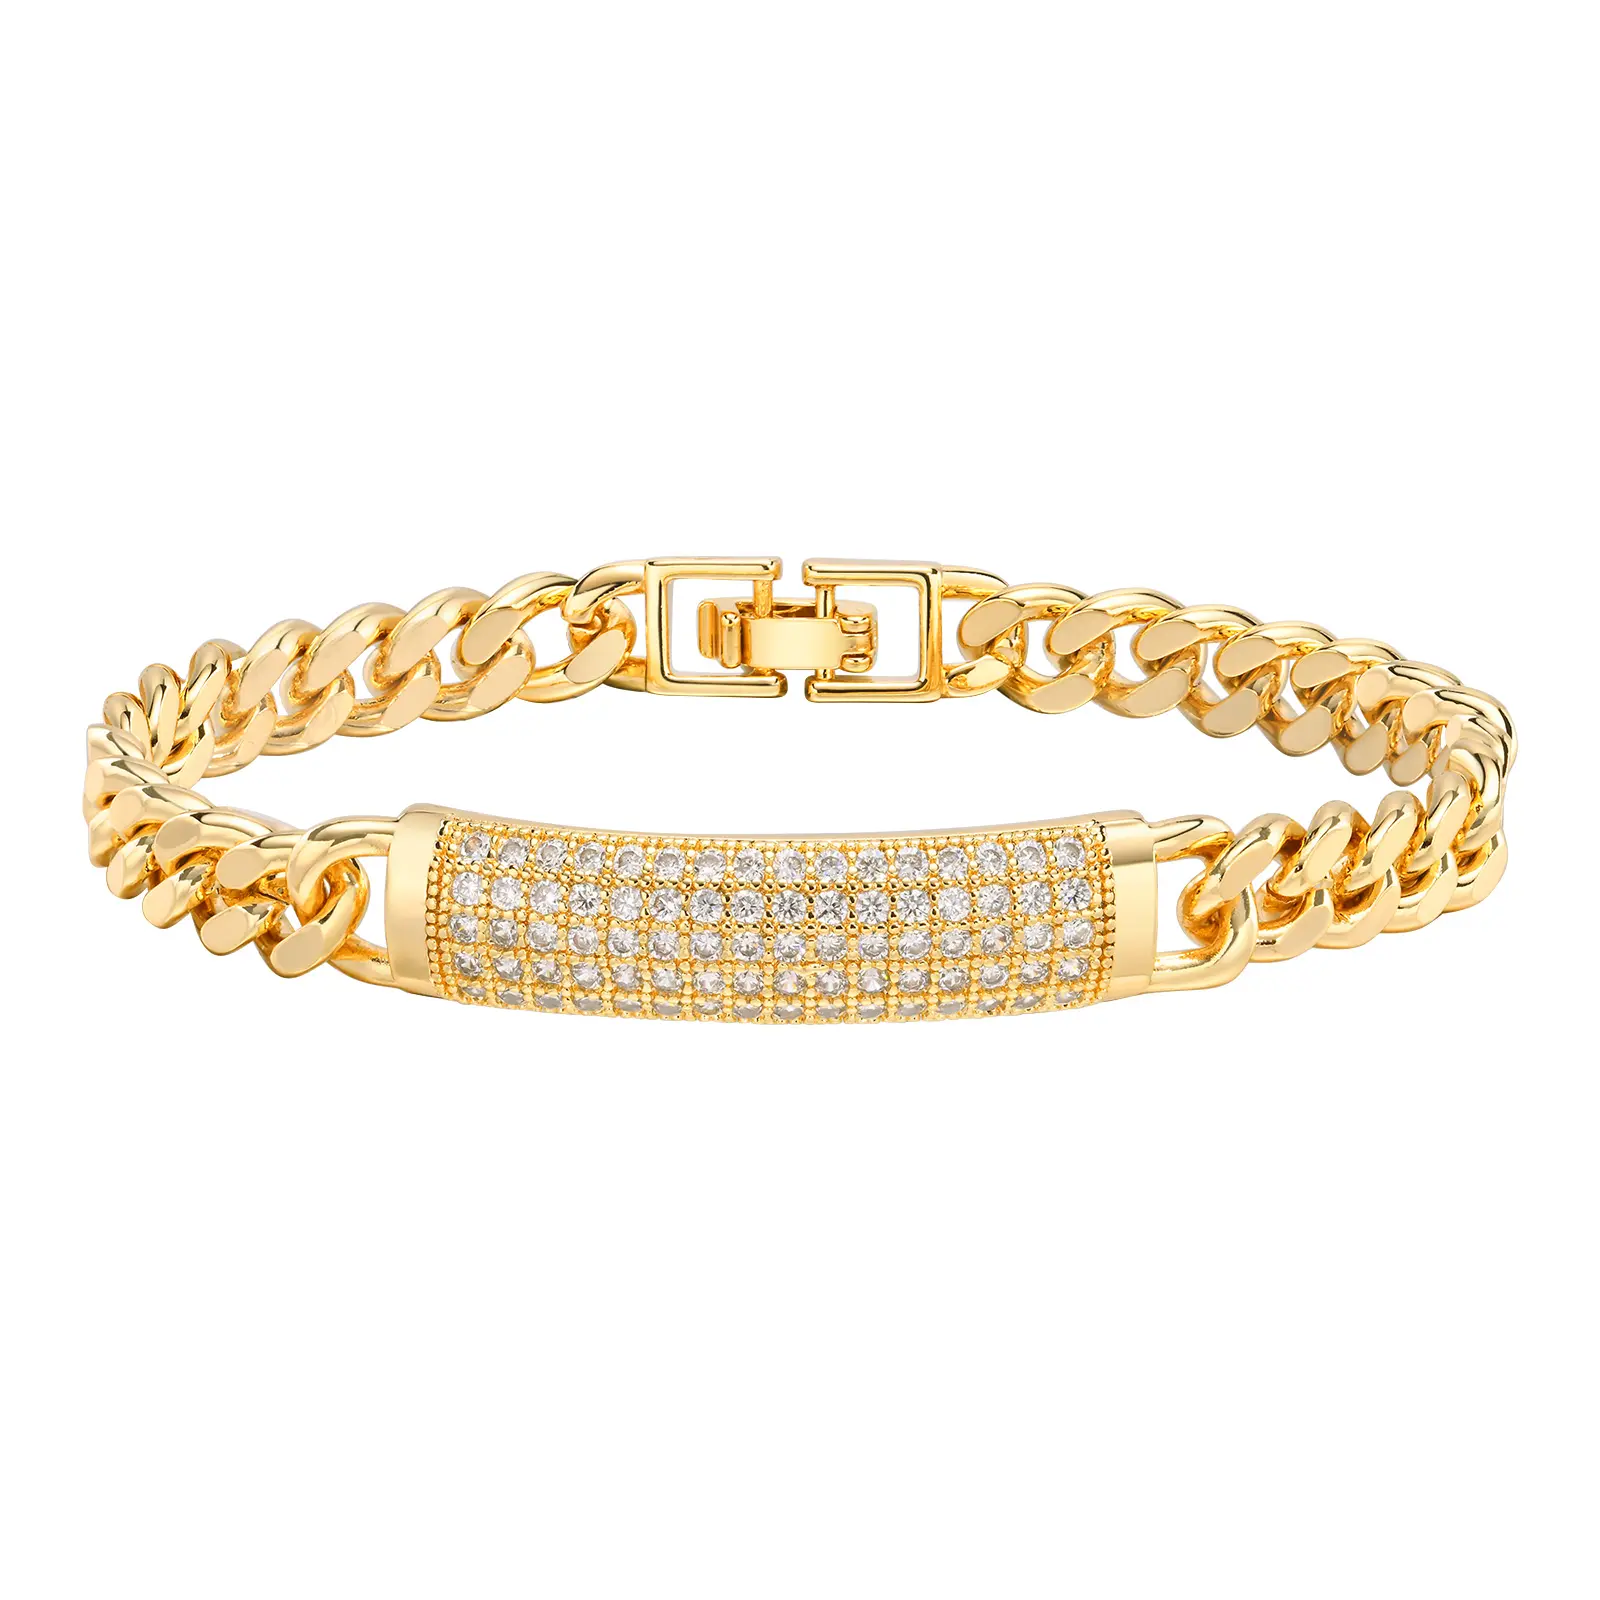 Braccialetti a catena Color oro lucido per le donne, Bling CZ pietra cuore animale Charm catena cubana bracciale gioiello braccialetto